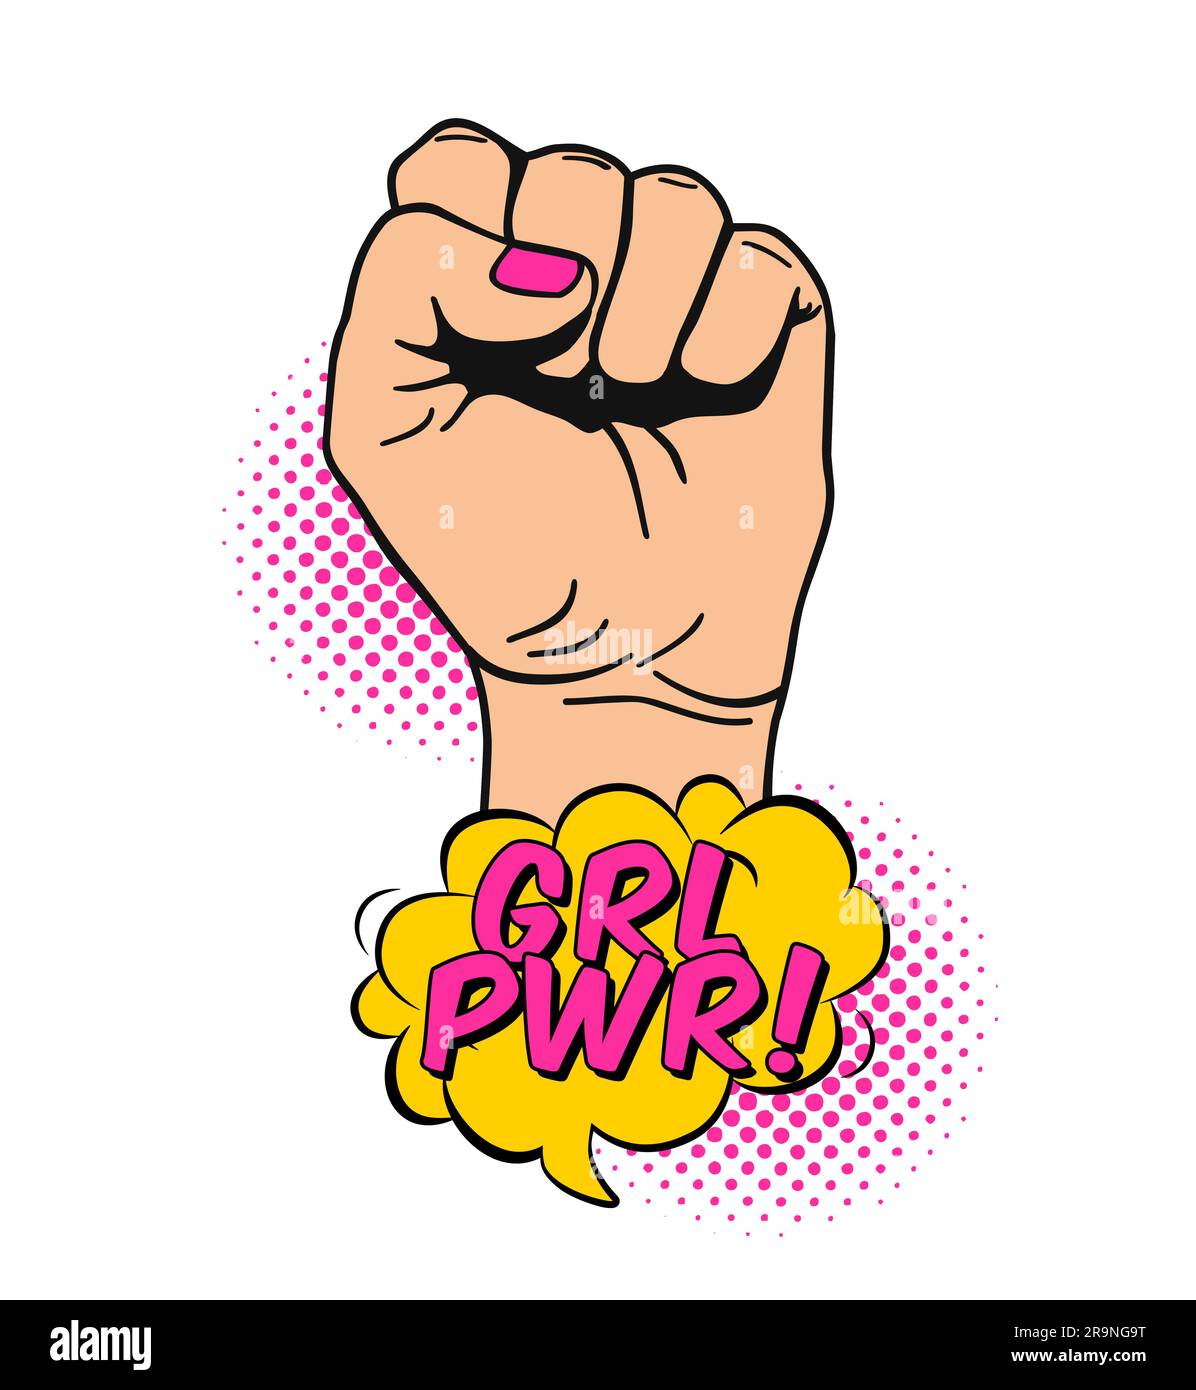 Illustration vectorielle de la poings féminins surélevés en style pop art comique. Écriteau sur le thème des droits et de la solidarité des femmes, le concept du féminisme, la protestation, les rebelles, Illustration de Vecteur